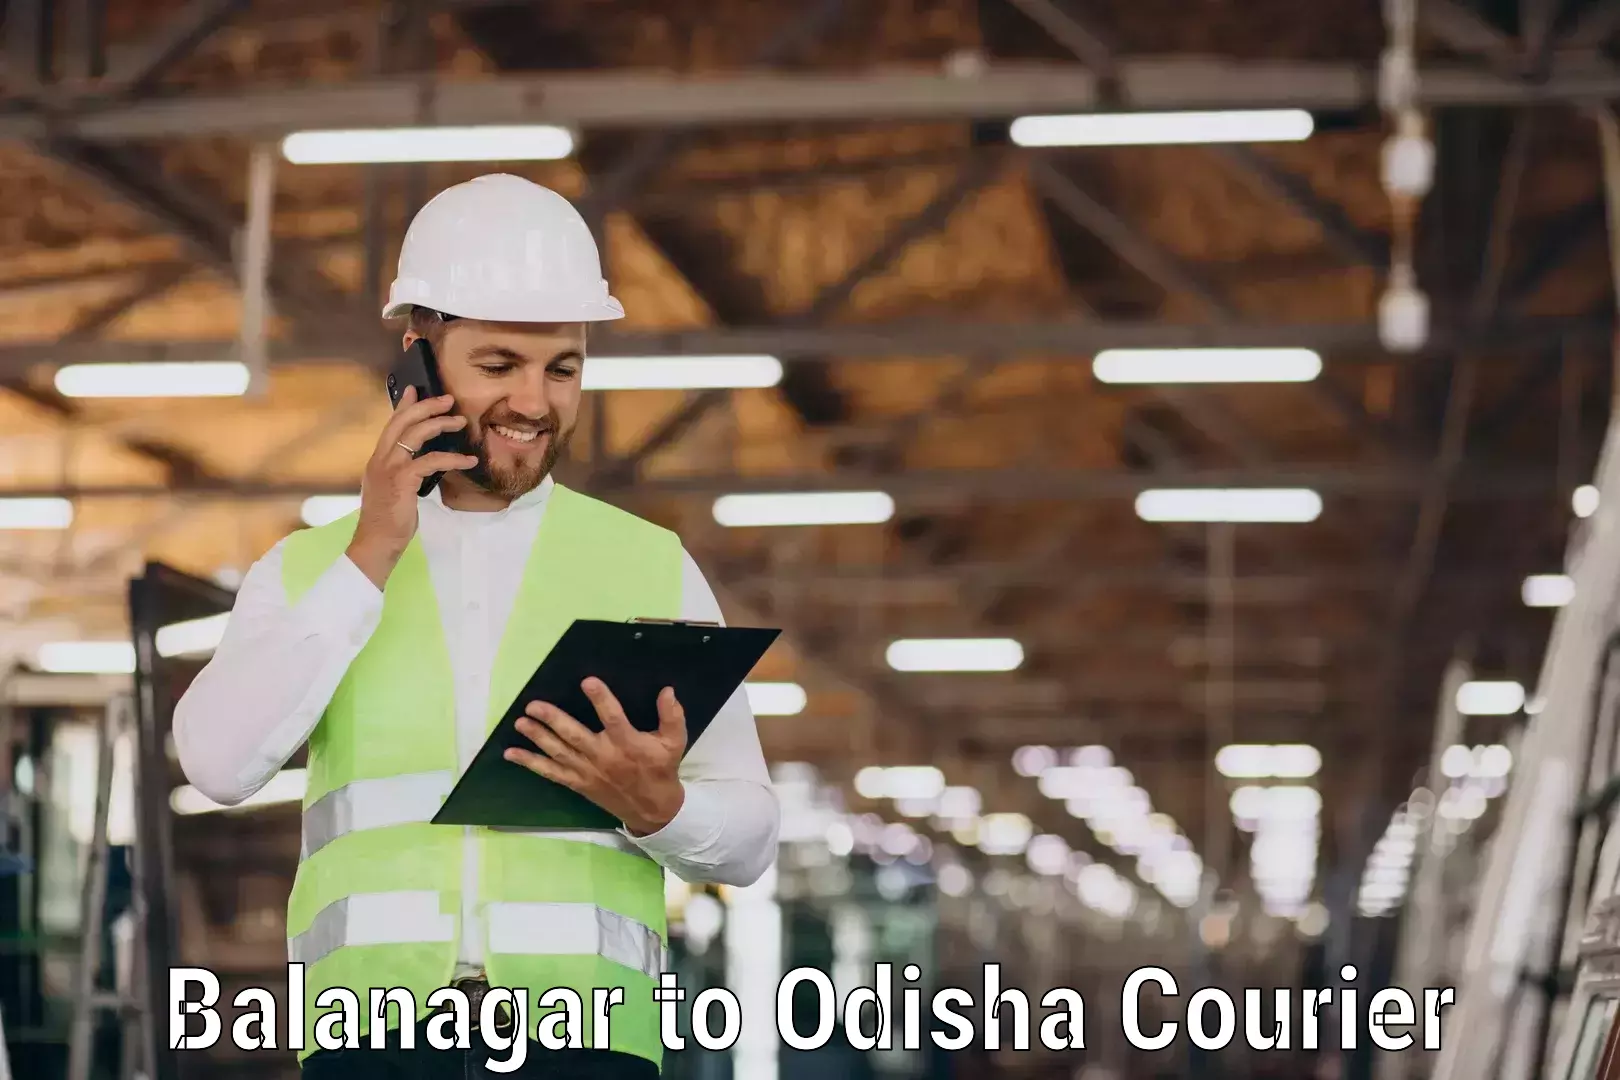 Seamless shipping experience in Balanagar to Odisha